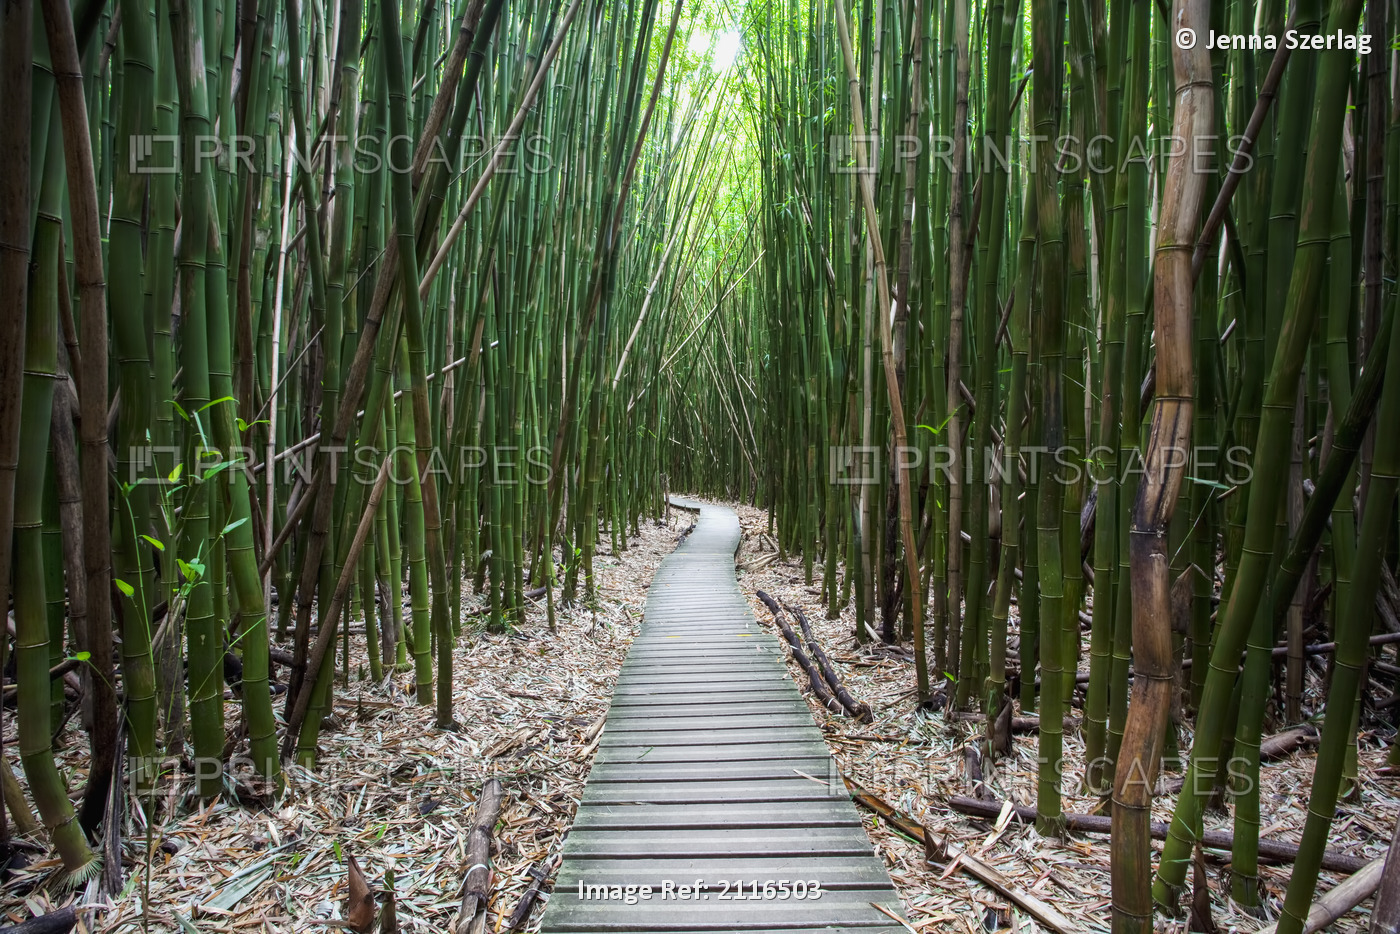 Hawaii, Maui, Kipahulu, Haleakala National Park, Trail through bamboo forest on ...